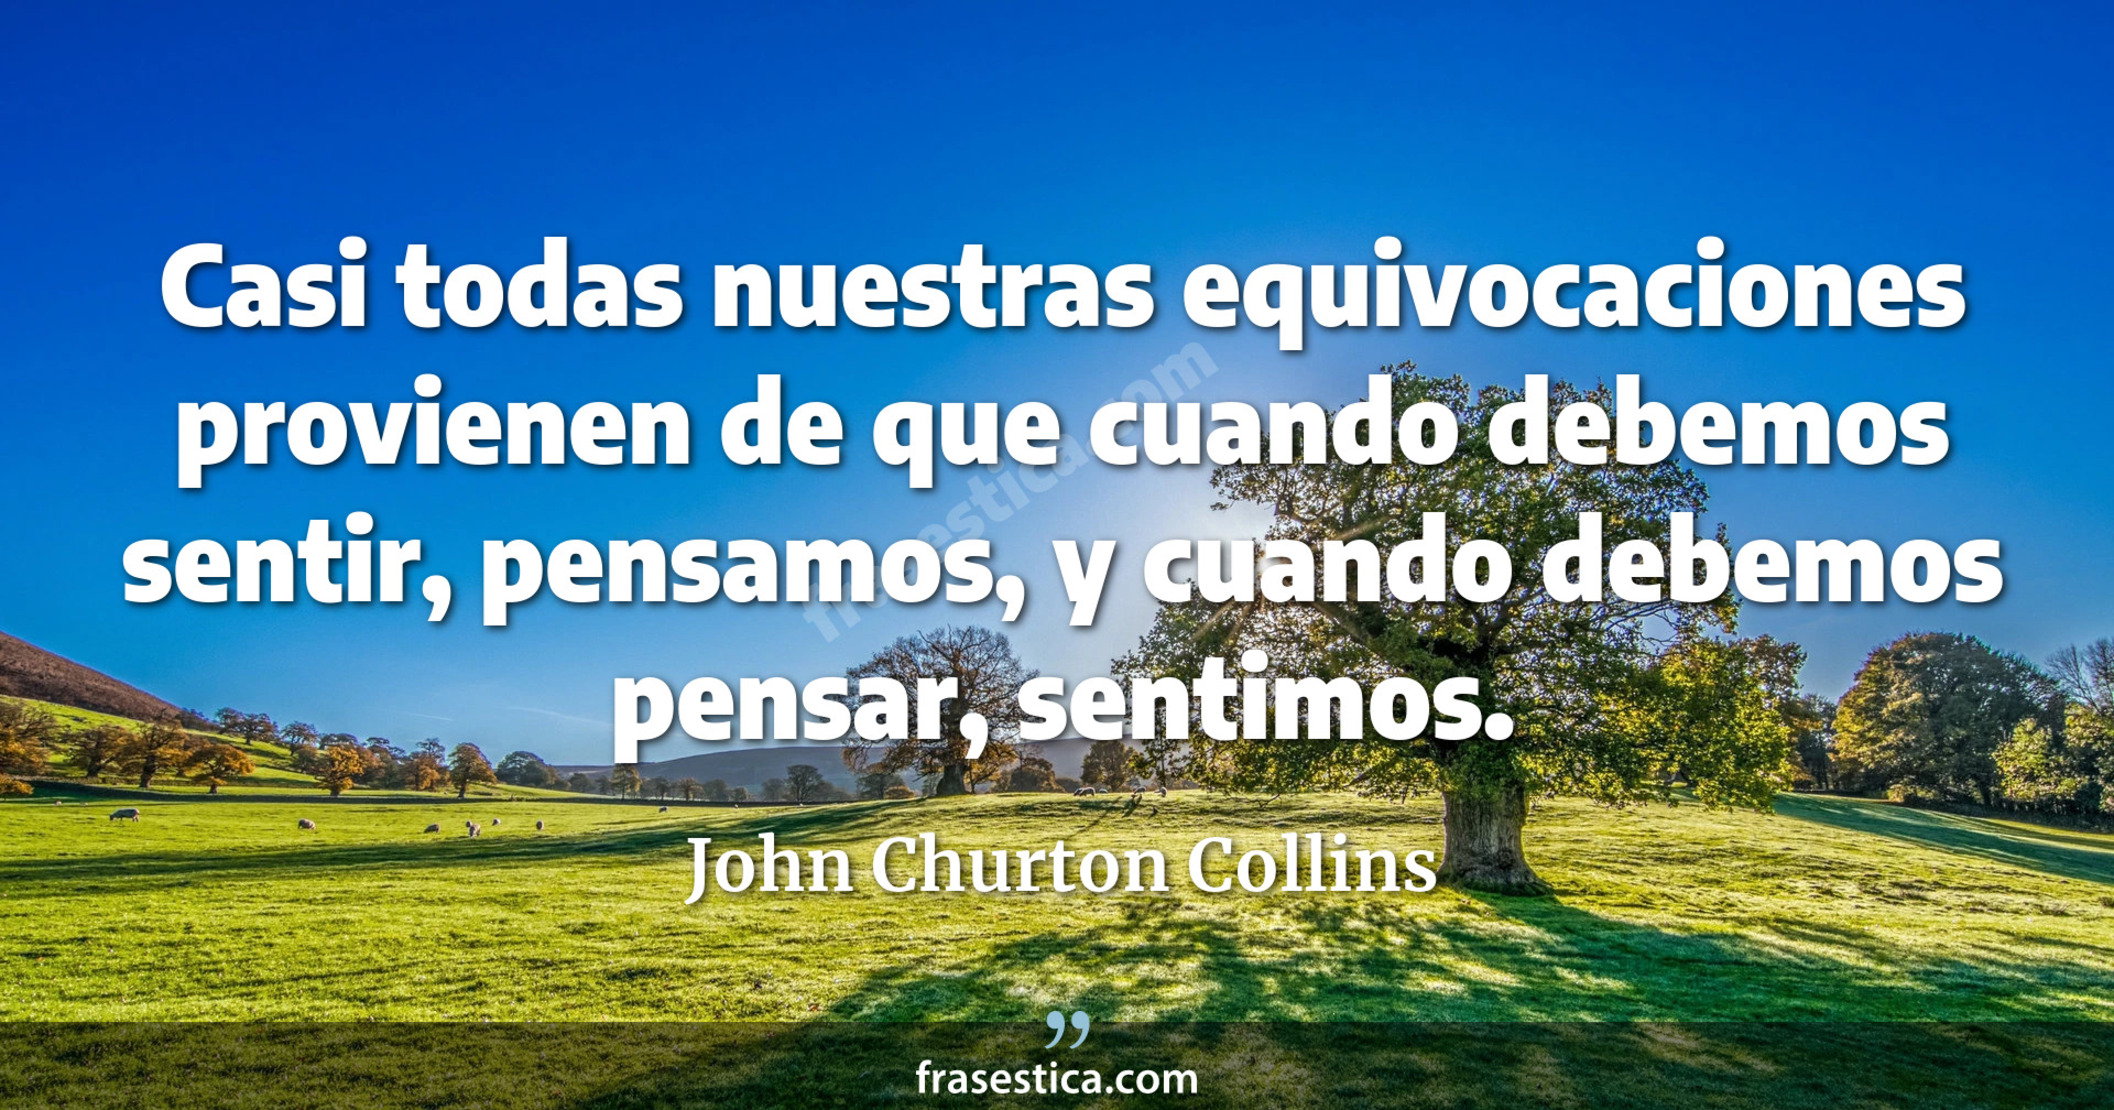 Casi todas nuestras equivocaciones provienen de que cuando debemos sentir, pensamos, y cuando debemos pensar, sentimos. - John Churton Collins